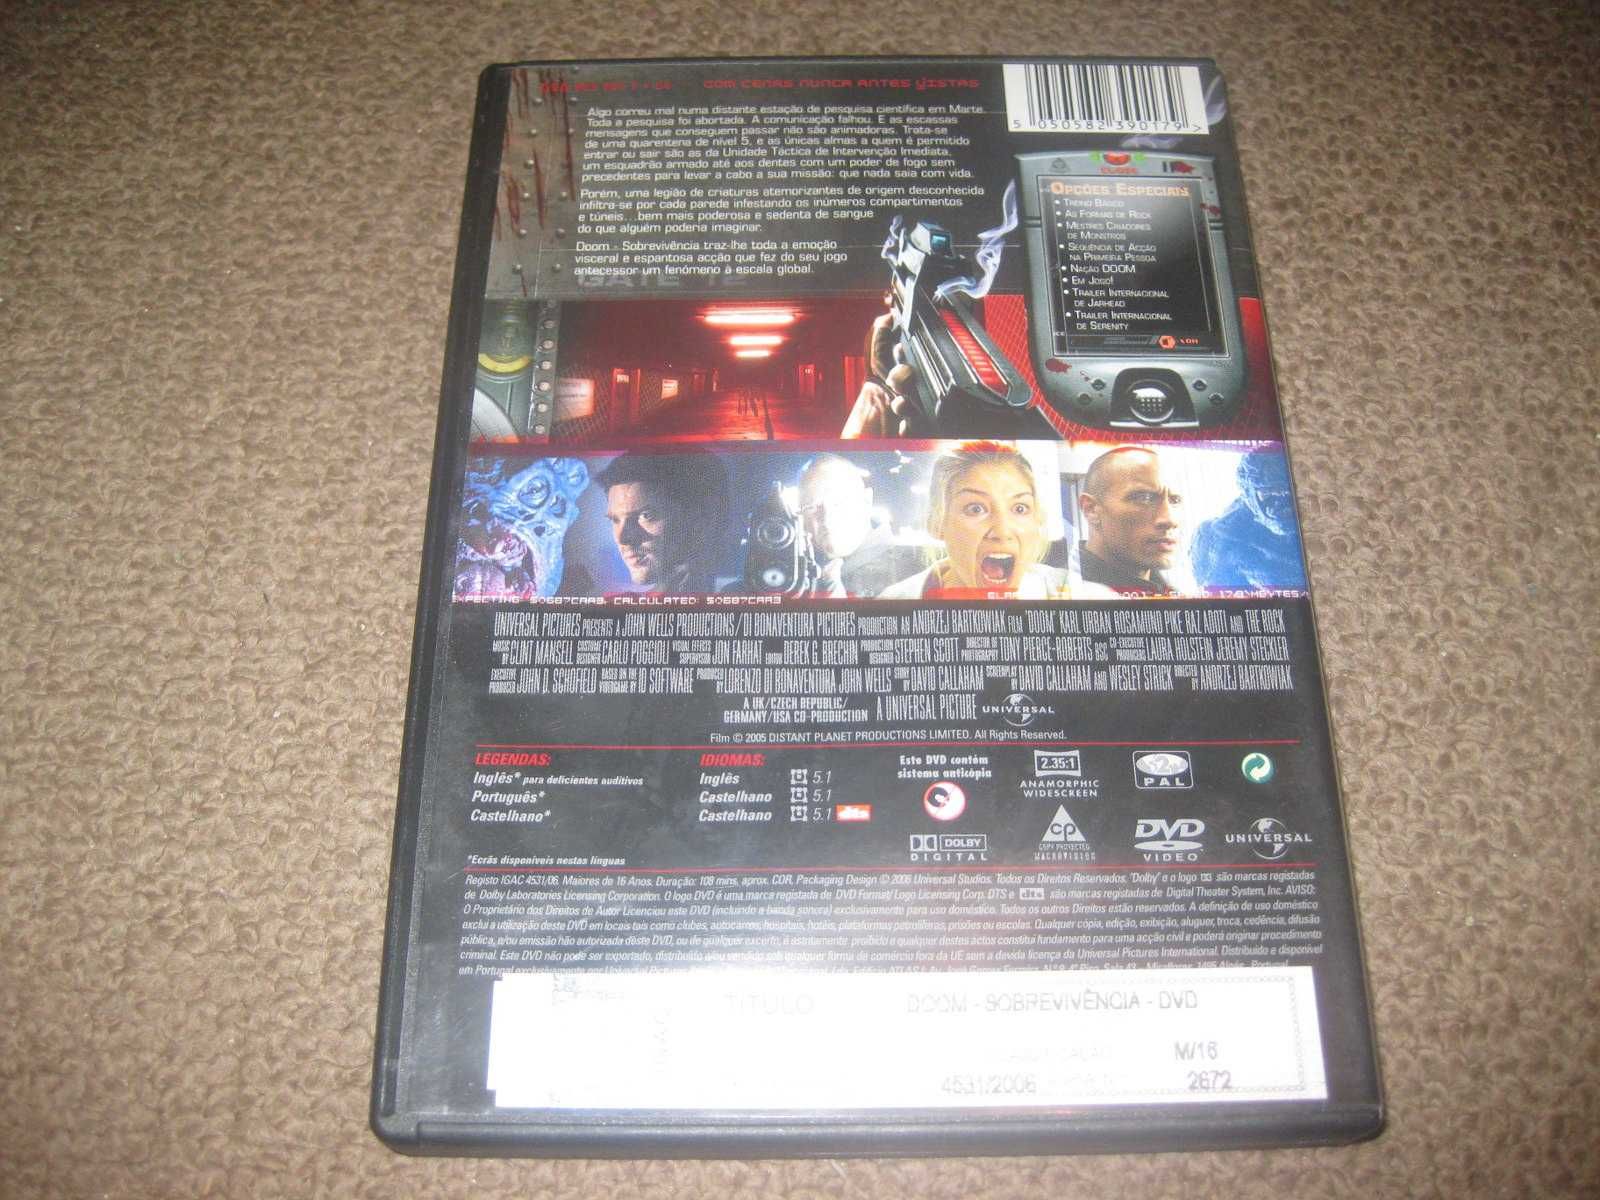 DVD "Doom- Sobrevivência" com Dwayne Johnson